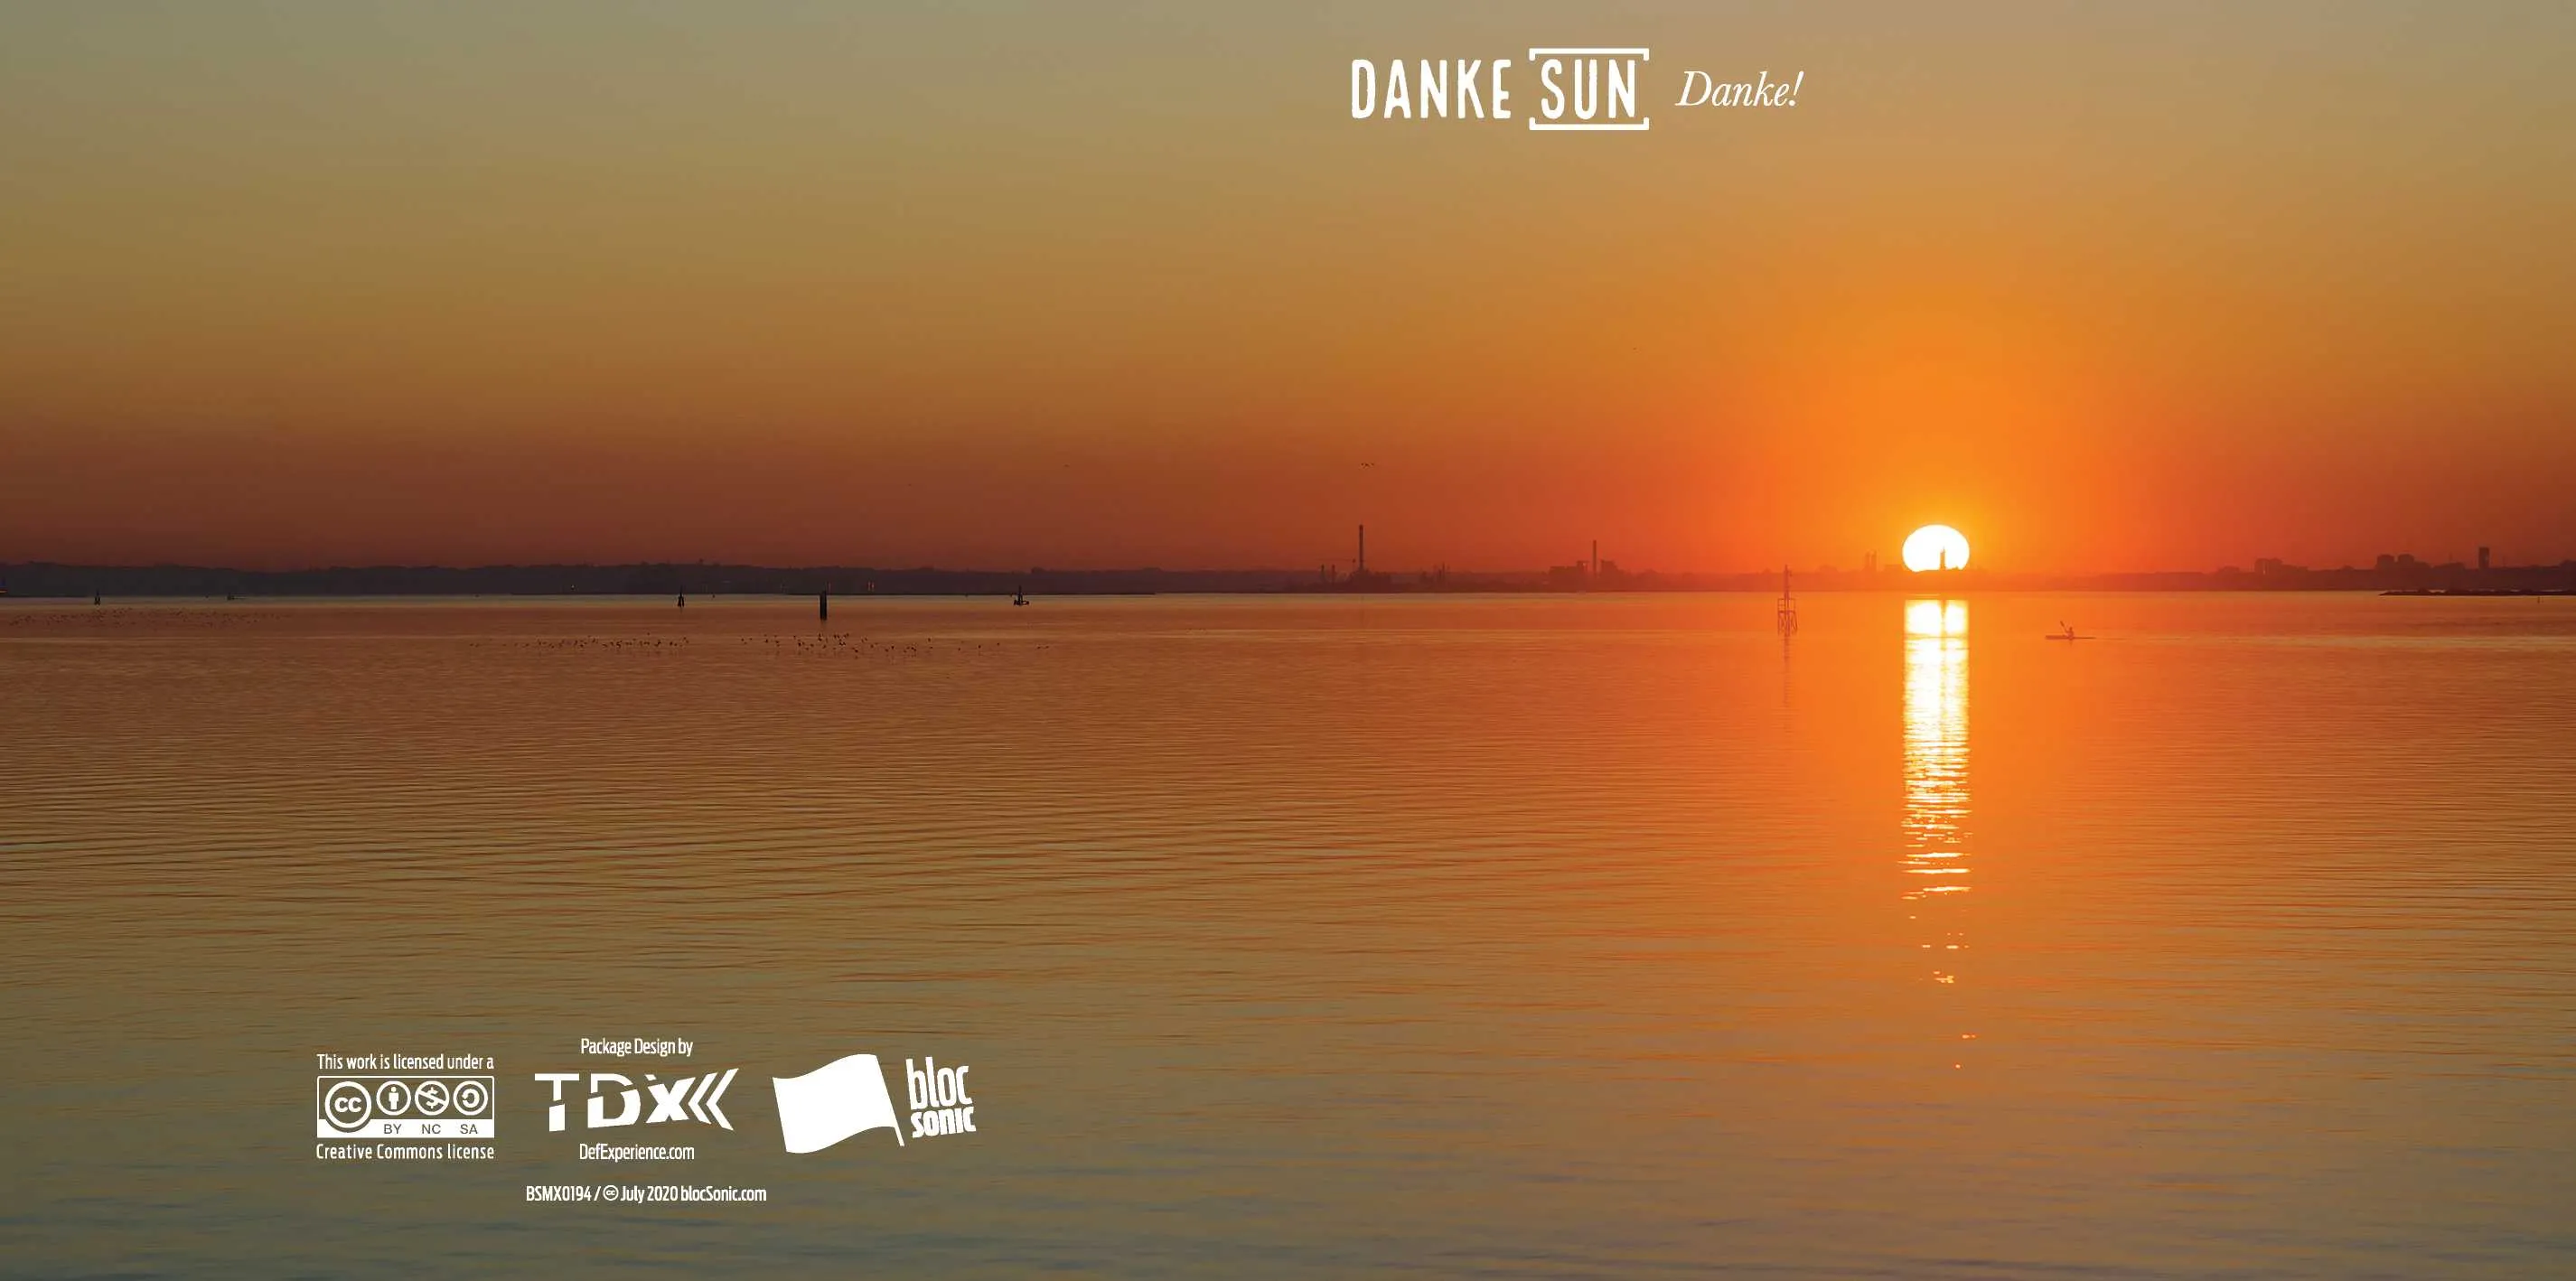 Album insert for “Danke!” by Danke Sun